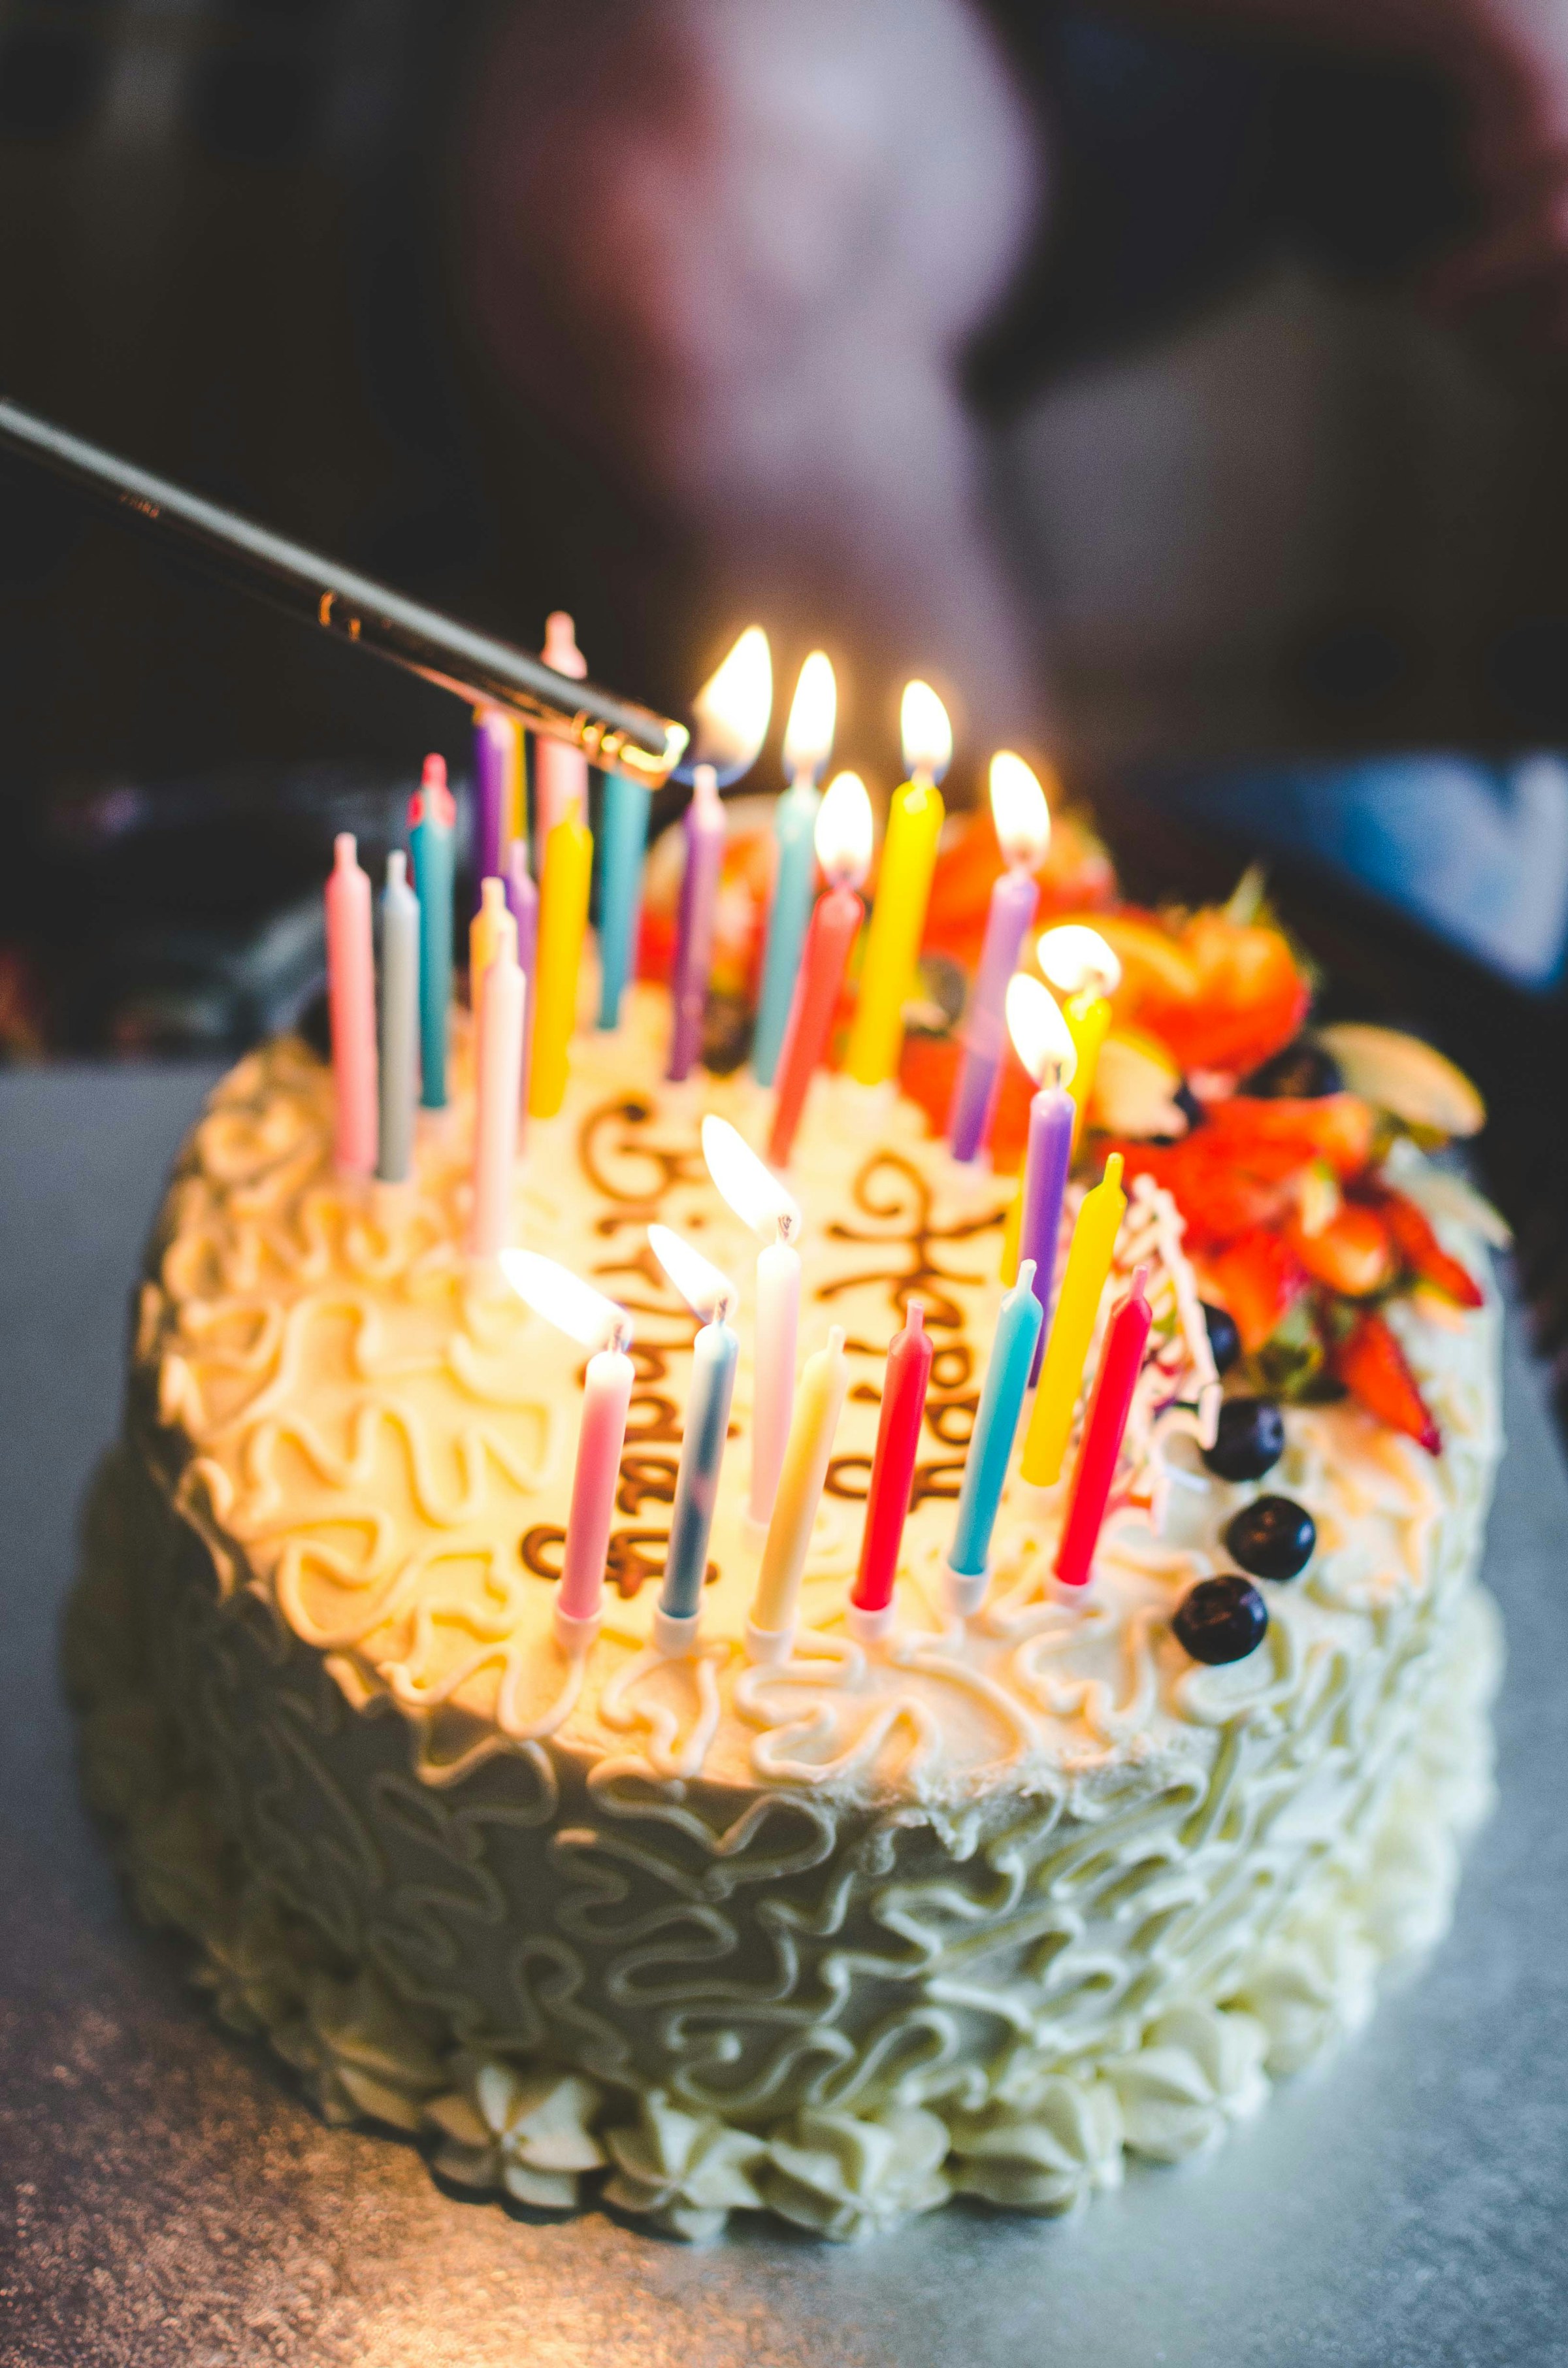 Geburtstagskuchen mit Kerzen | Quelle: Unsplash